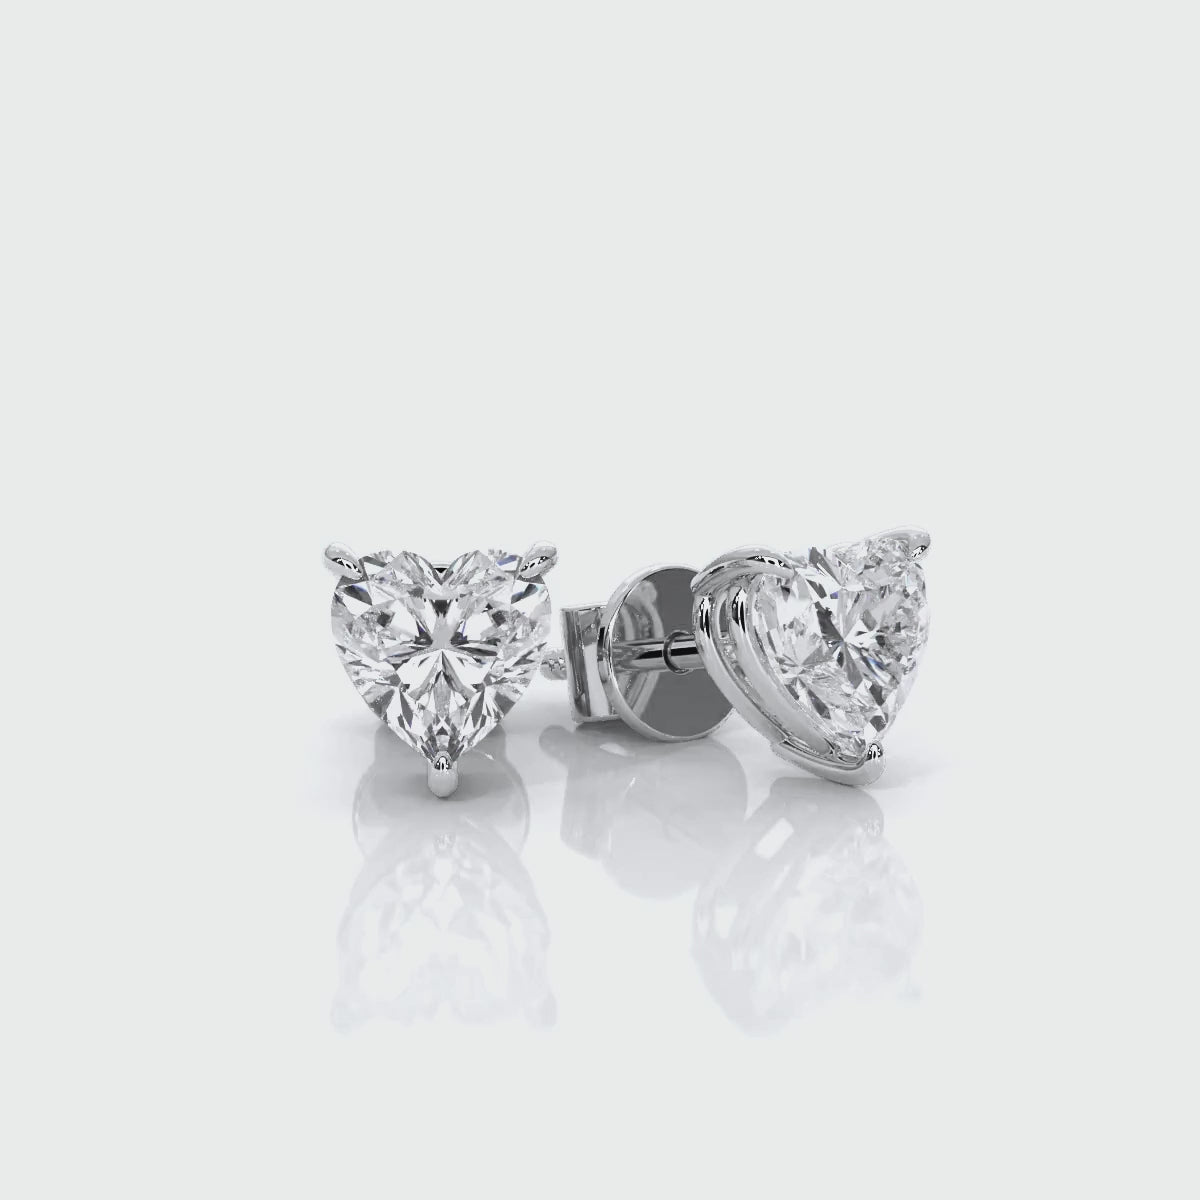 Heart - White Rose Gold Lab Grown Diamond Earrings For Women